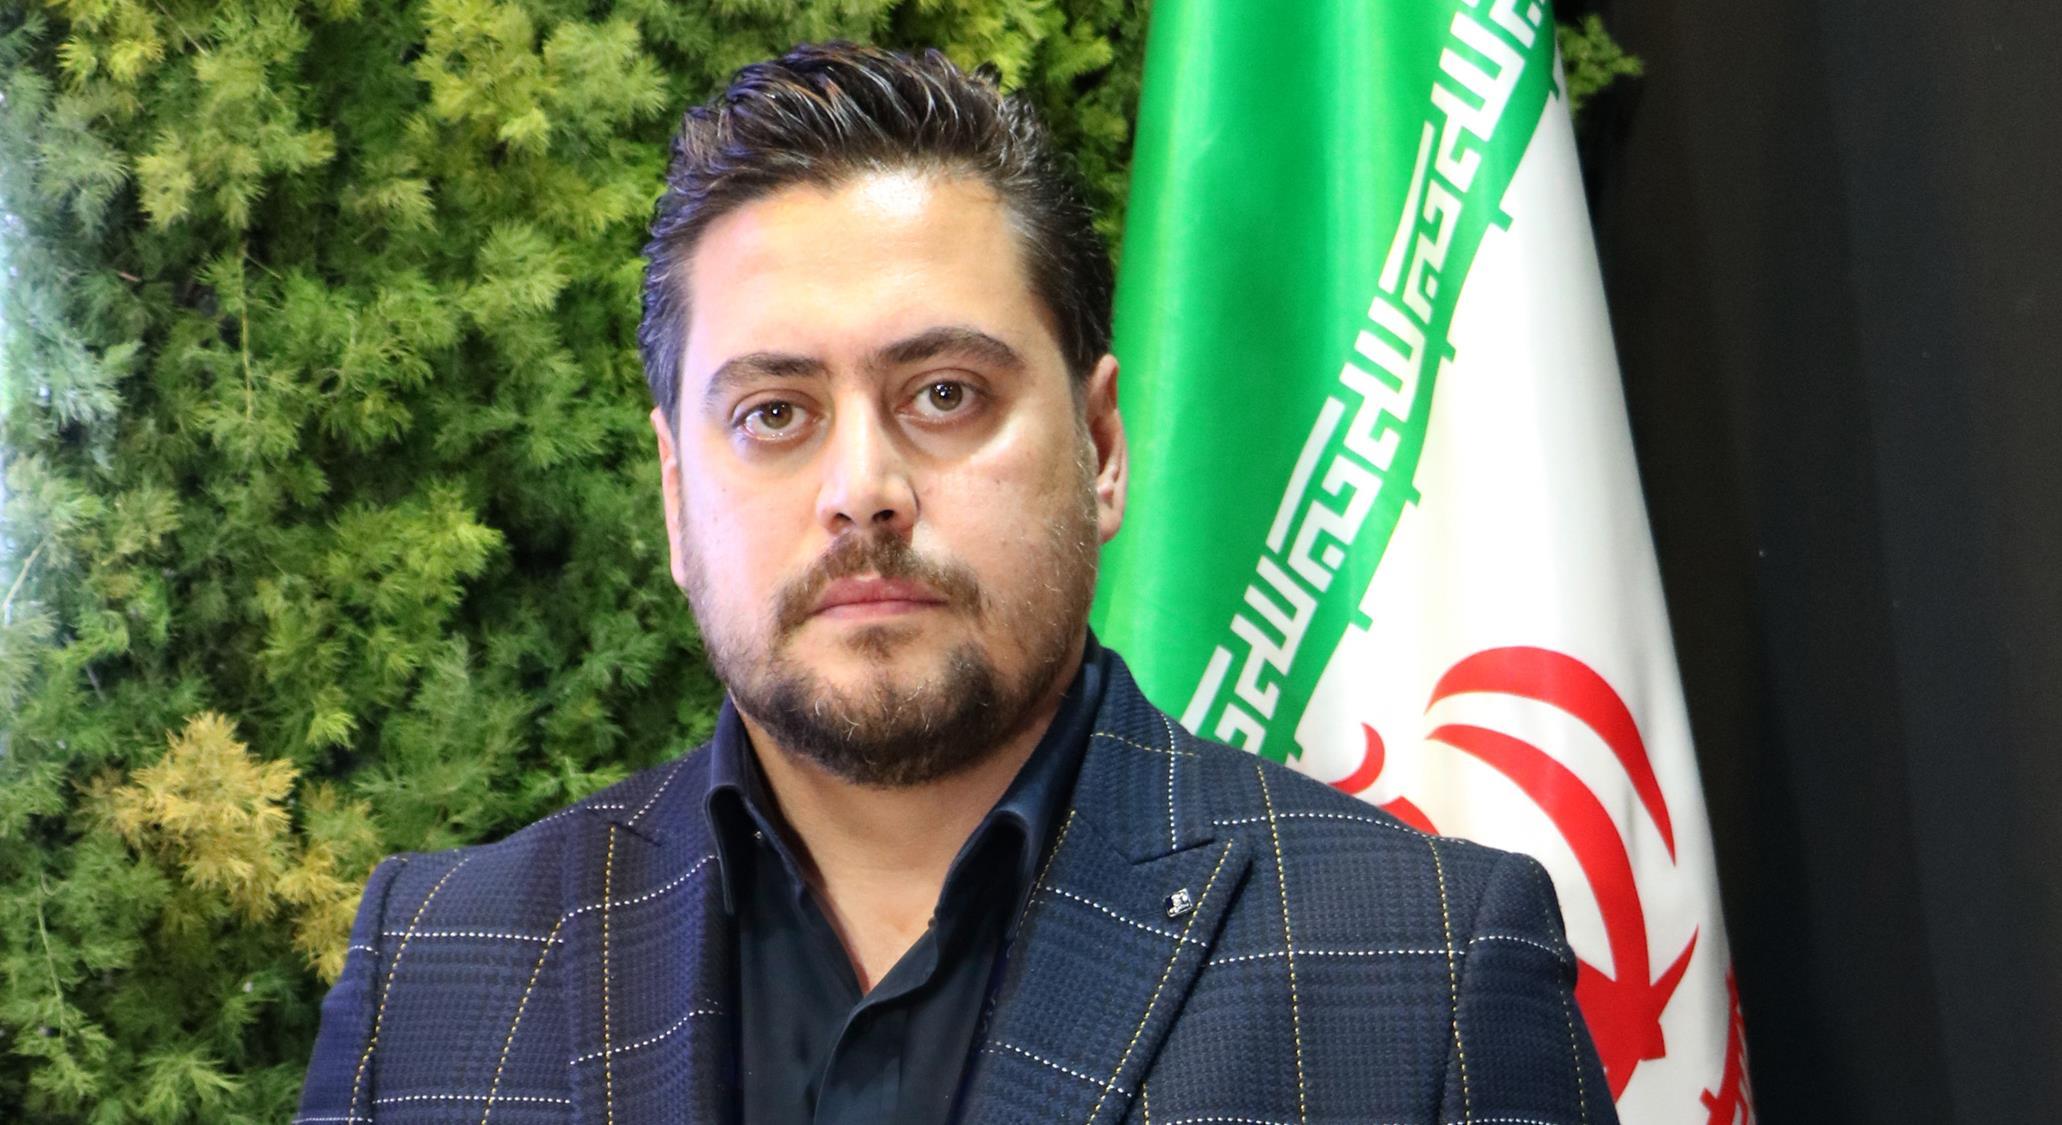 متین فرزین، مدیرعامل شرکت اعتماد کابل البرز